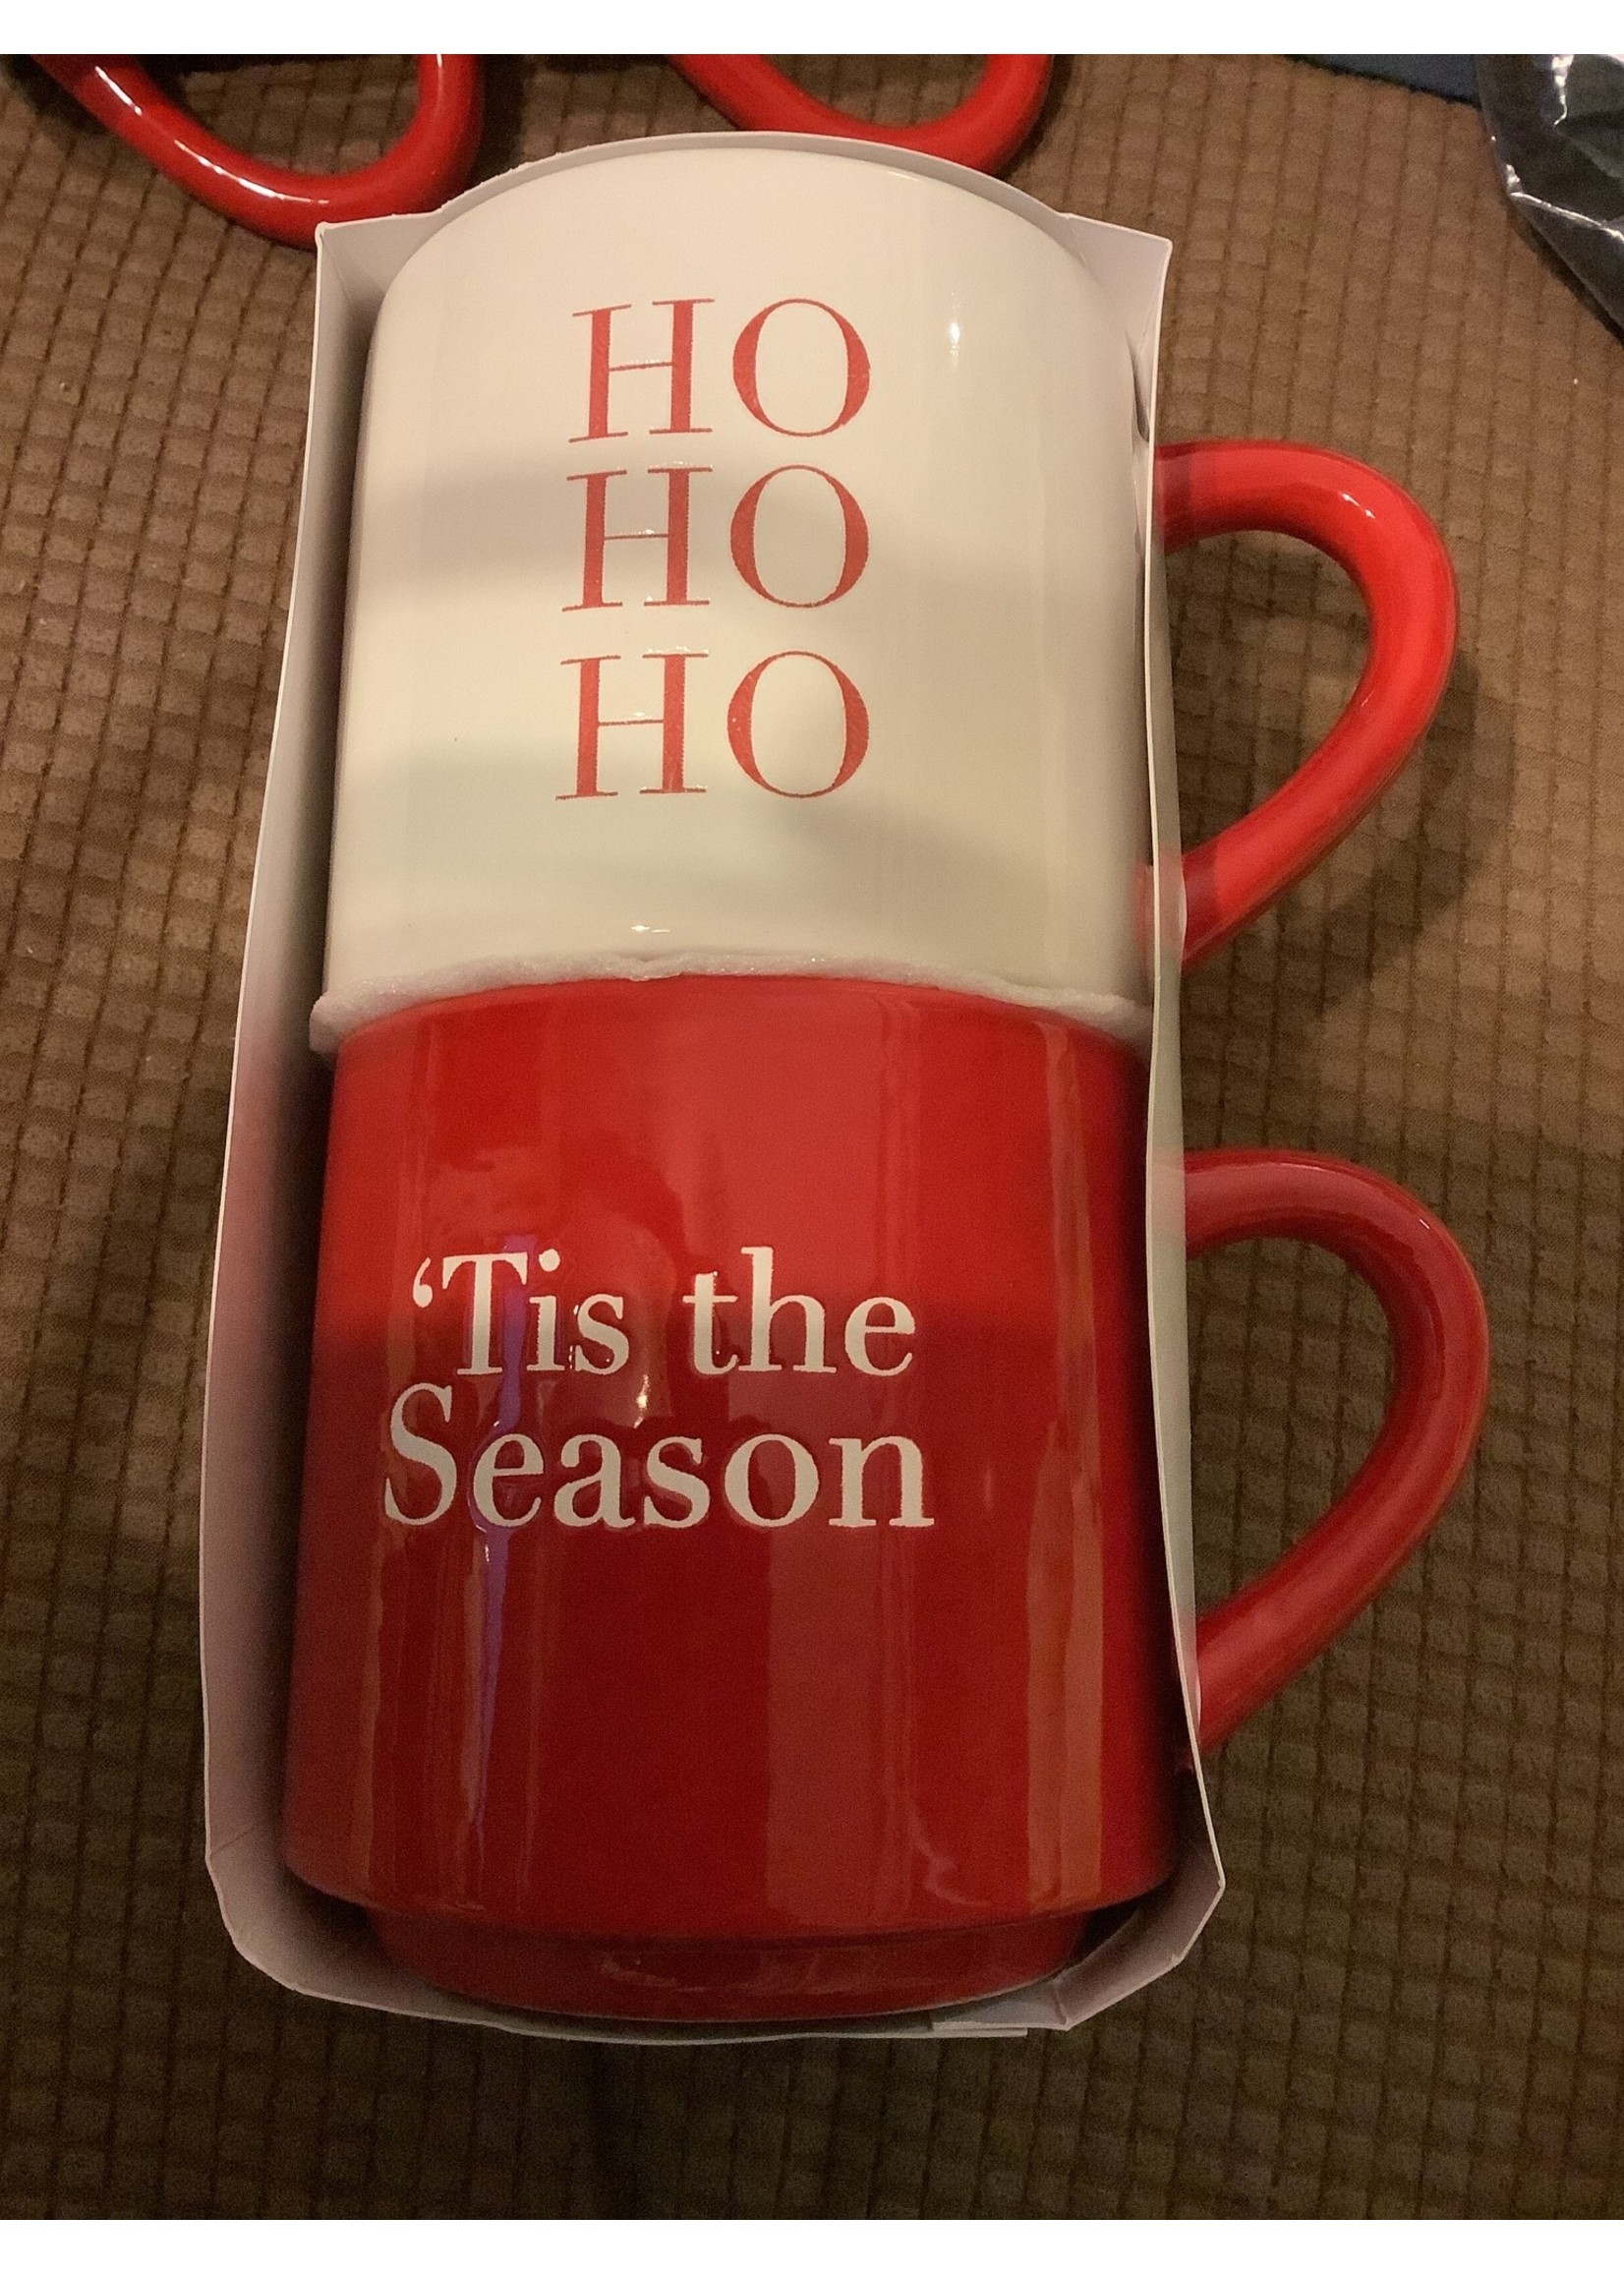 Christmas Stackable Coffee Mugs “Ho Ho Ho / Tis the Season”